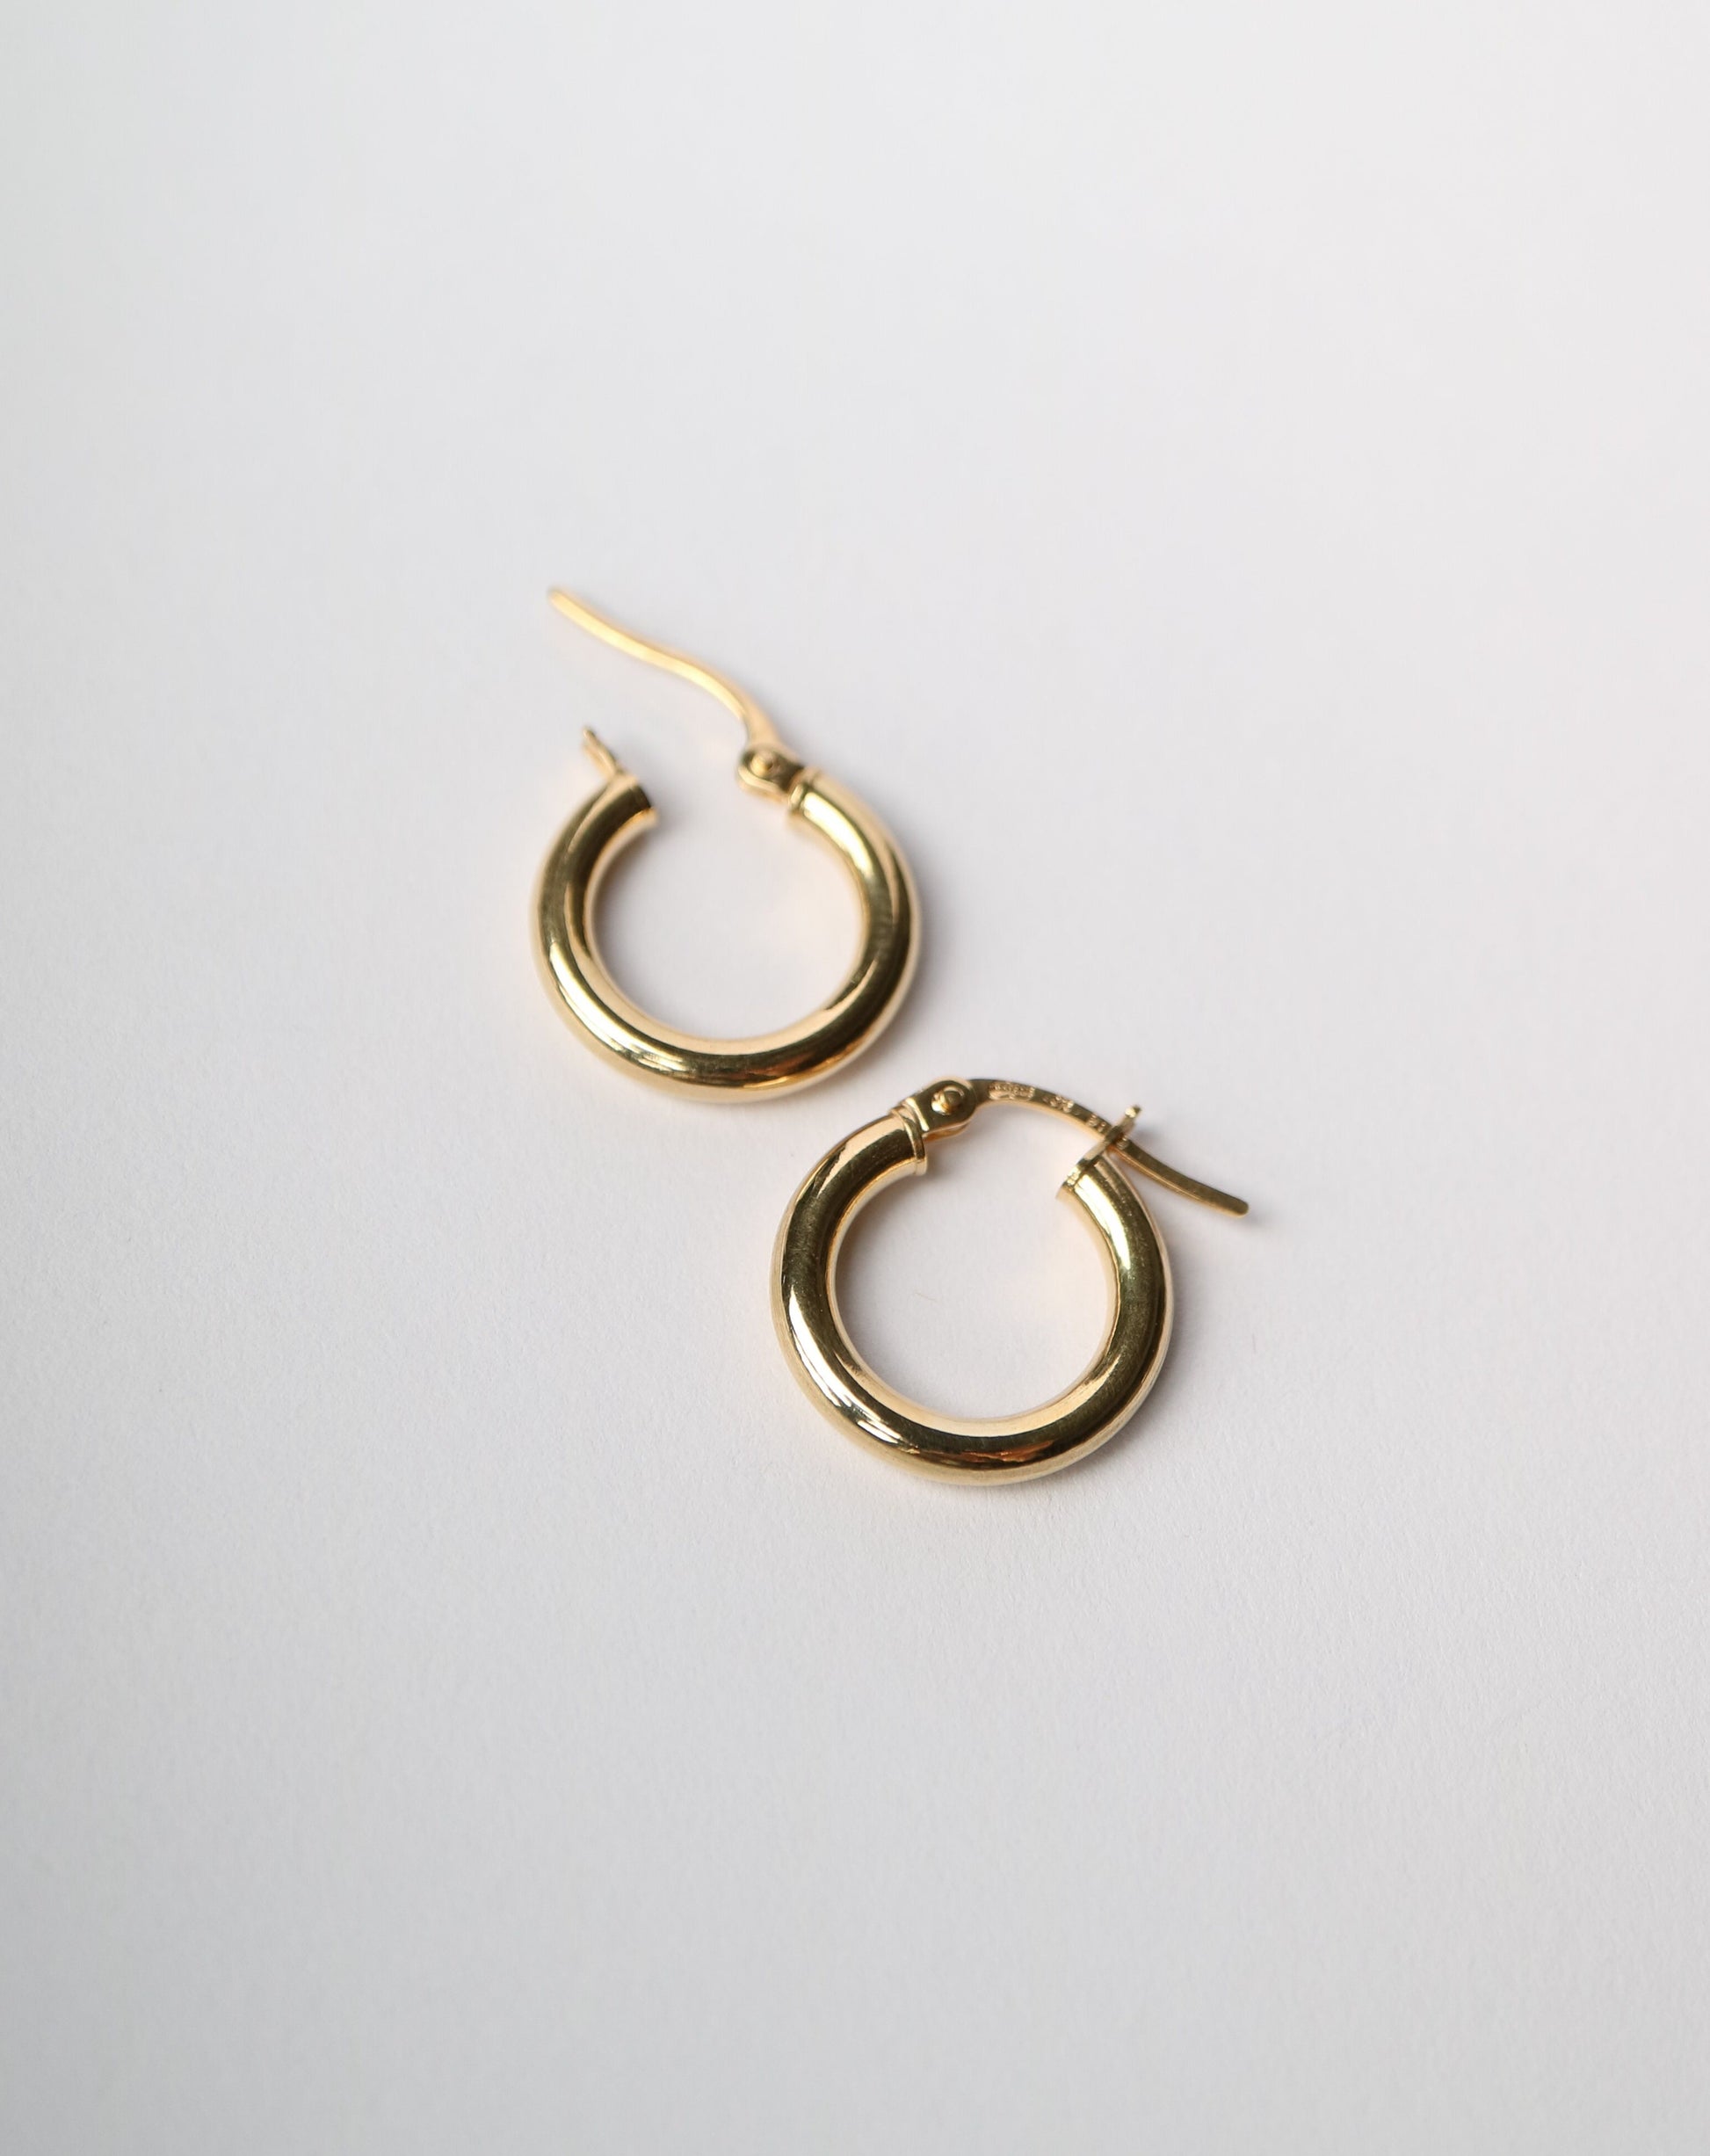 9ct gold Hoop Earrings 15mm